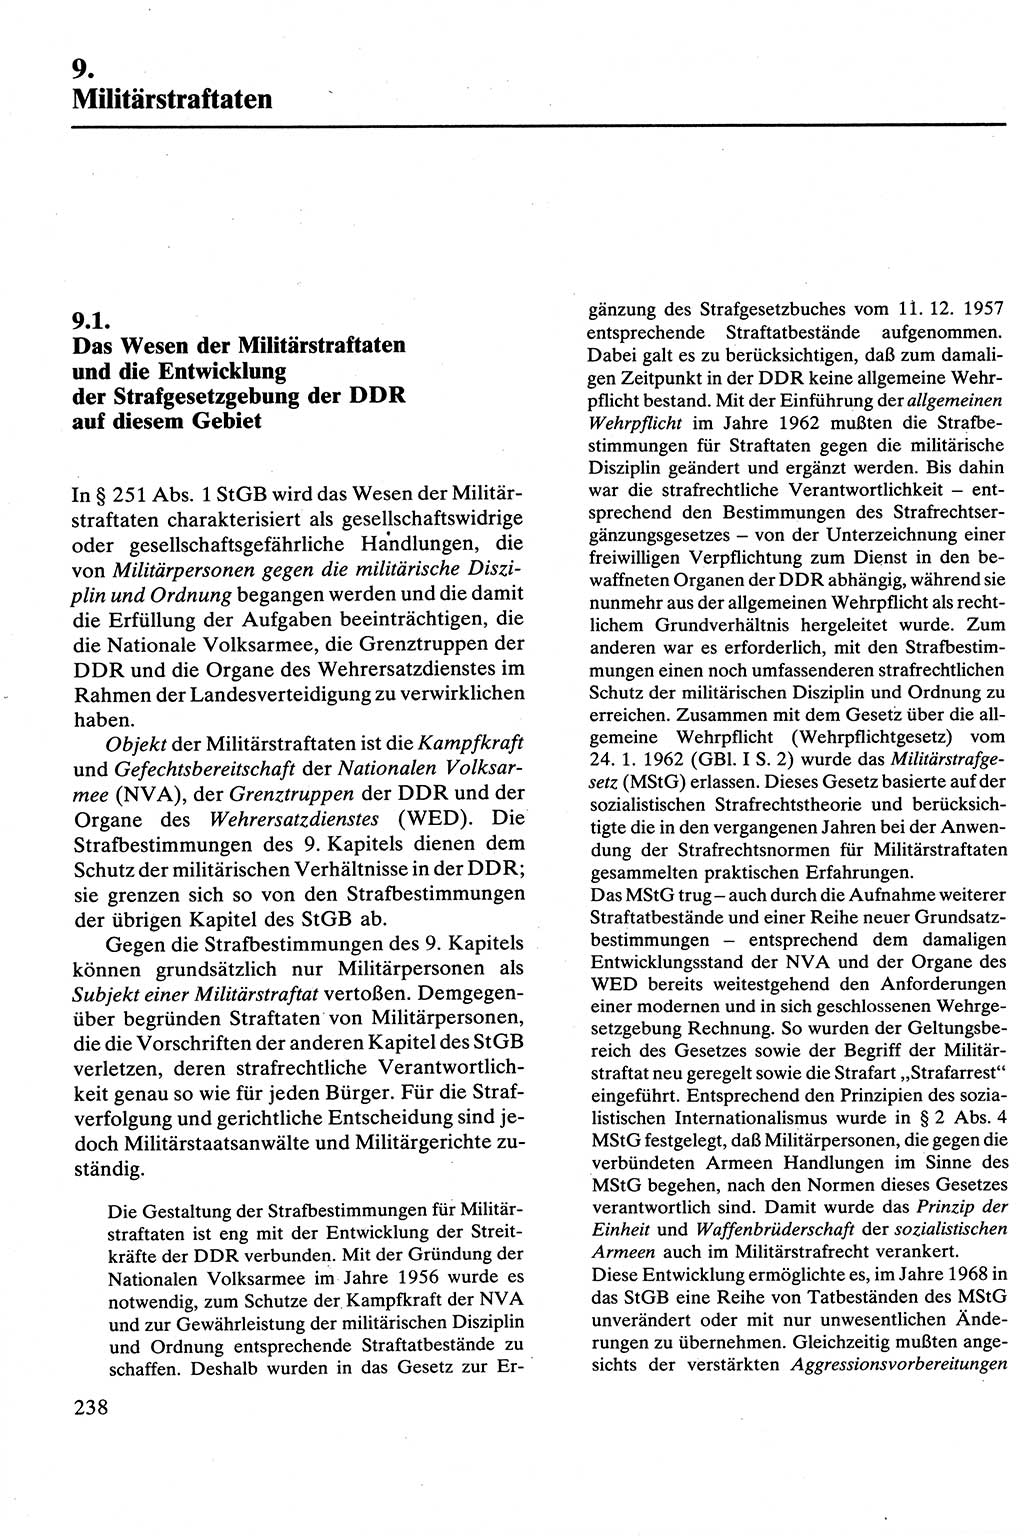 Strafrecht [Deutsche Demokratische Republik (DDR)], Besonderer Teil, Lehrbuch 1981, Seite 238 (Strafr. DDR BT Lb. 1981, S. 238)